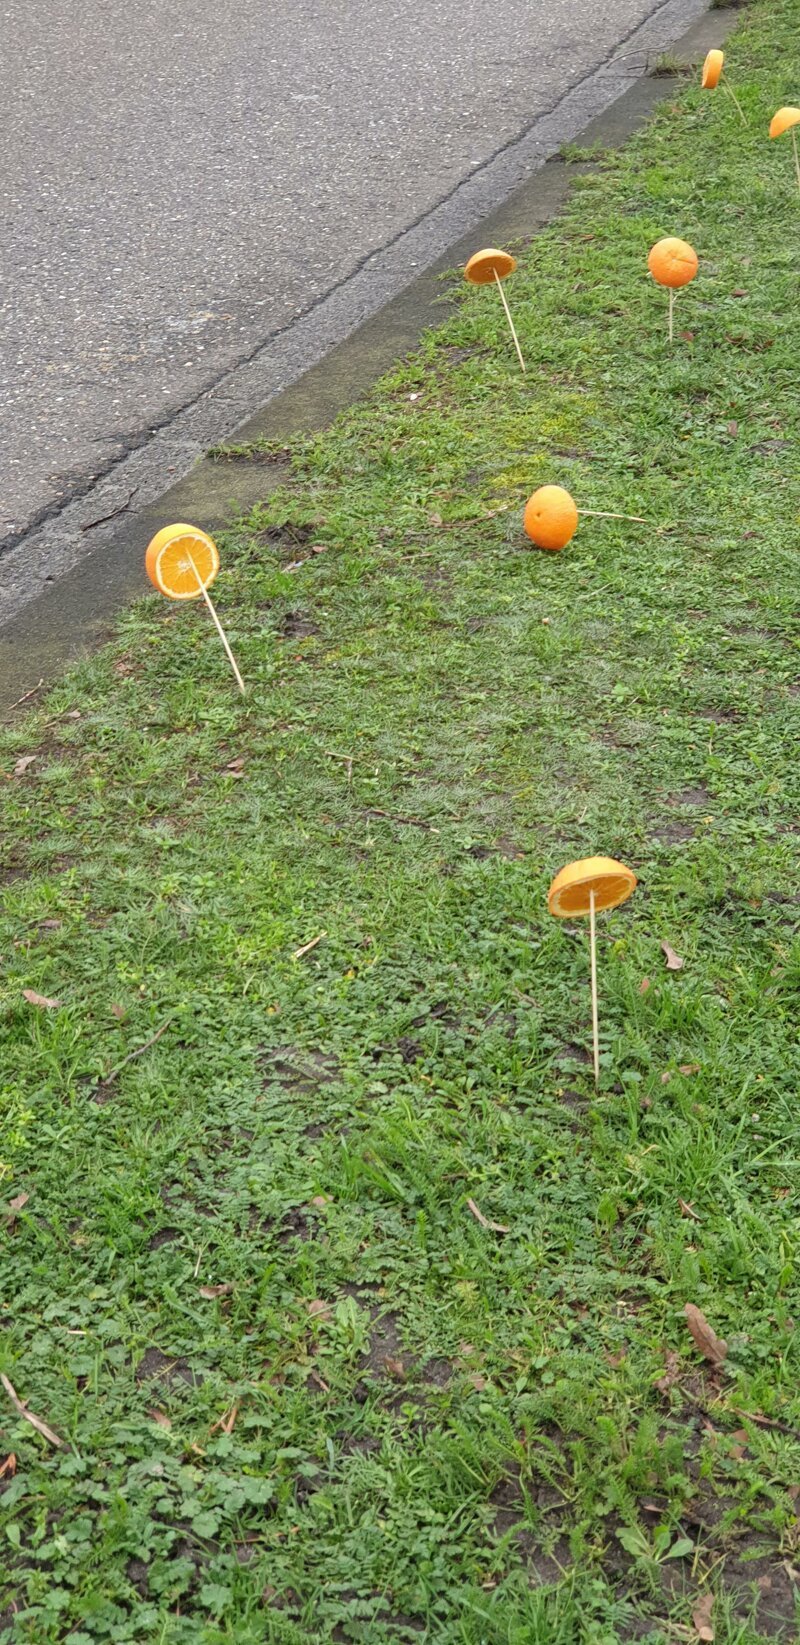 «Зачем люди накалывают апельсины на палочки и оставляют на газоне возле дороги? Увидел такое в Нидерландах».